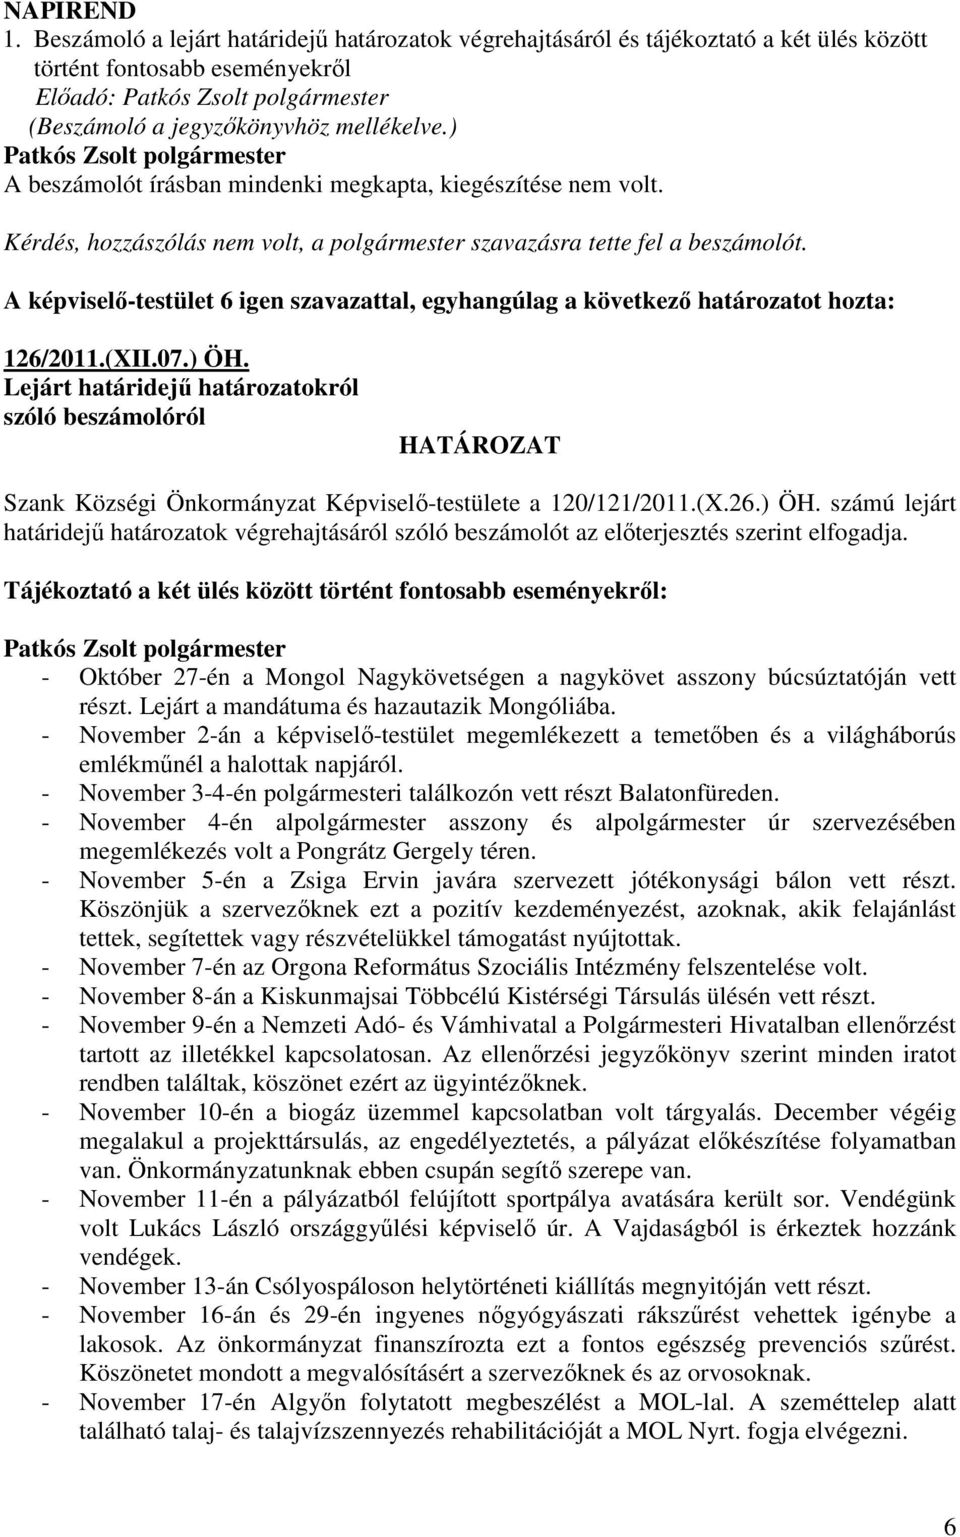 A képviselı-testület 6 igen szavazattal, egyhangúlag a következı határozatot hozta: 126/2011.(XII.07.) ÖH.